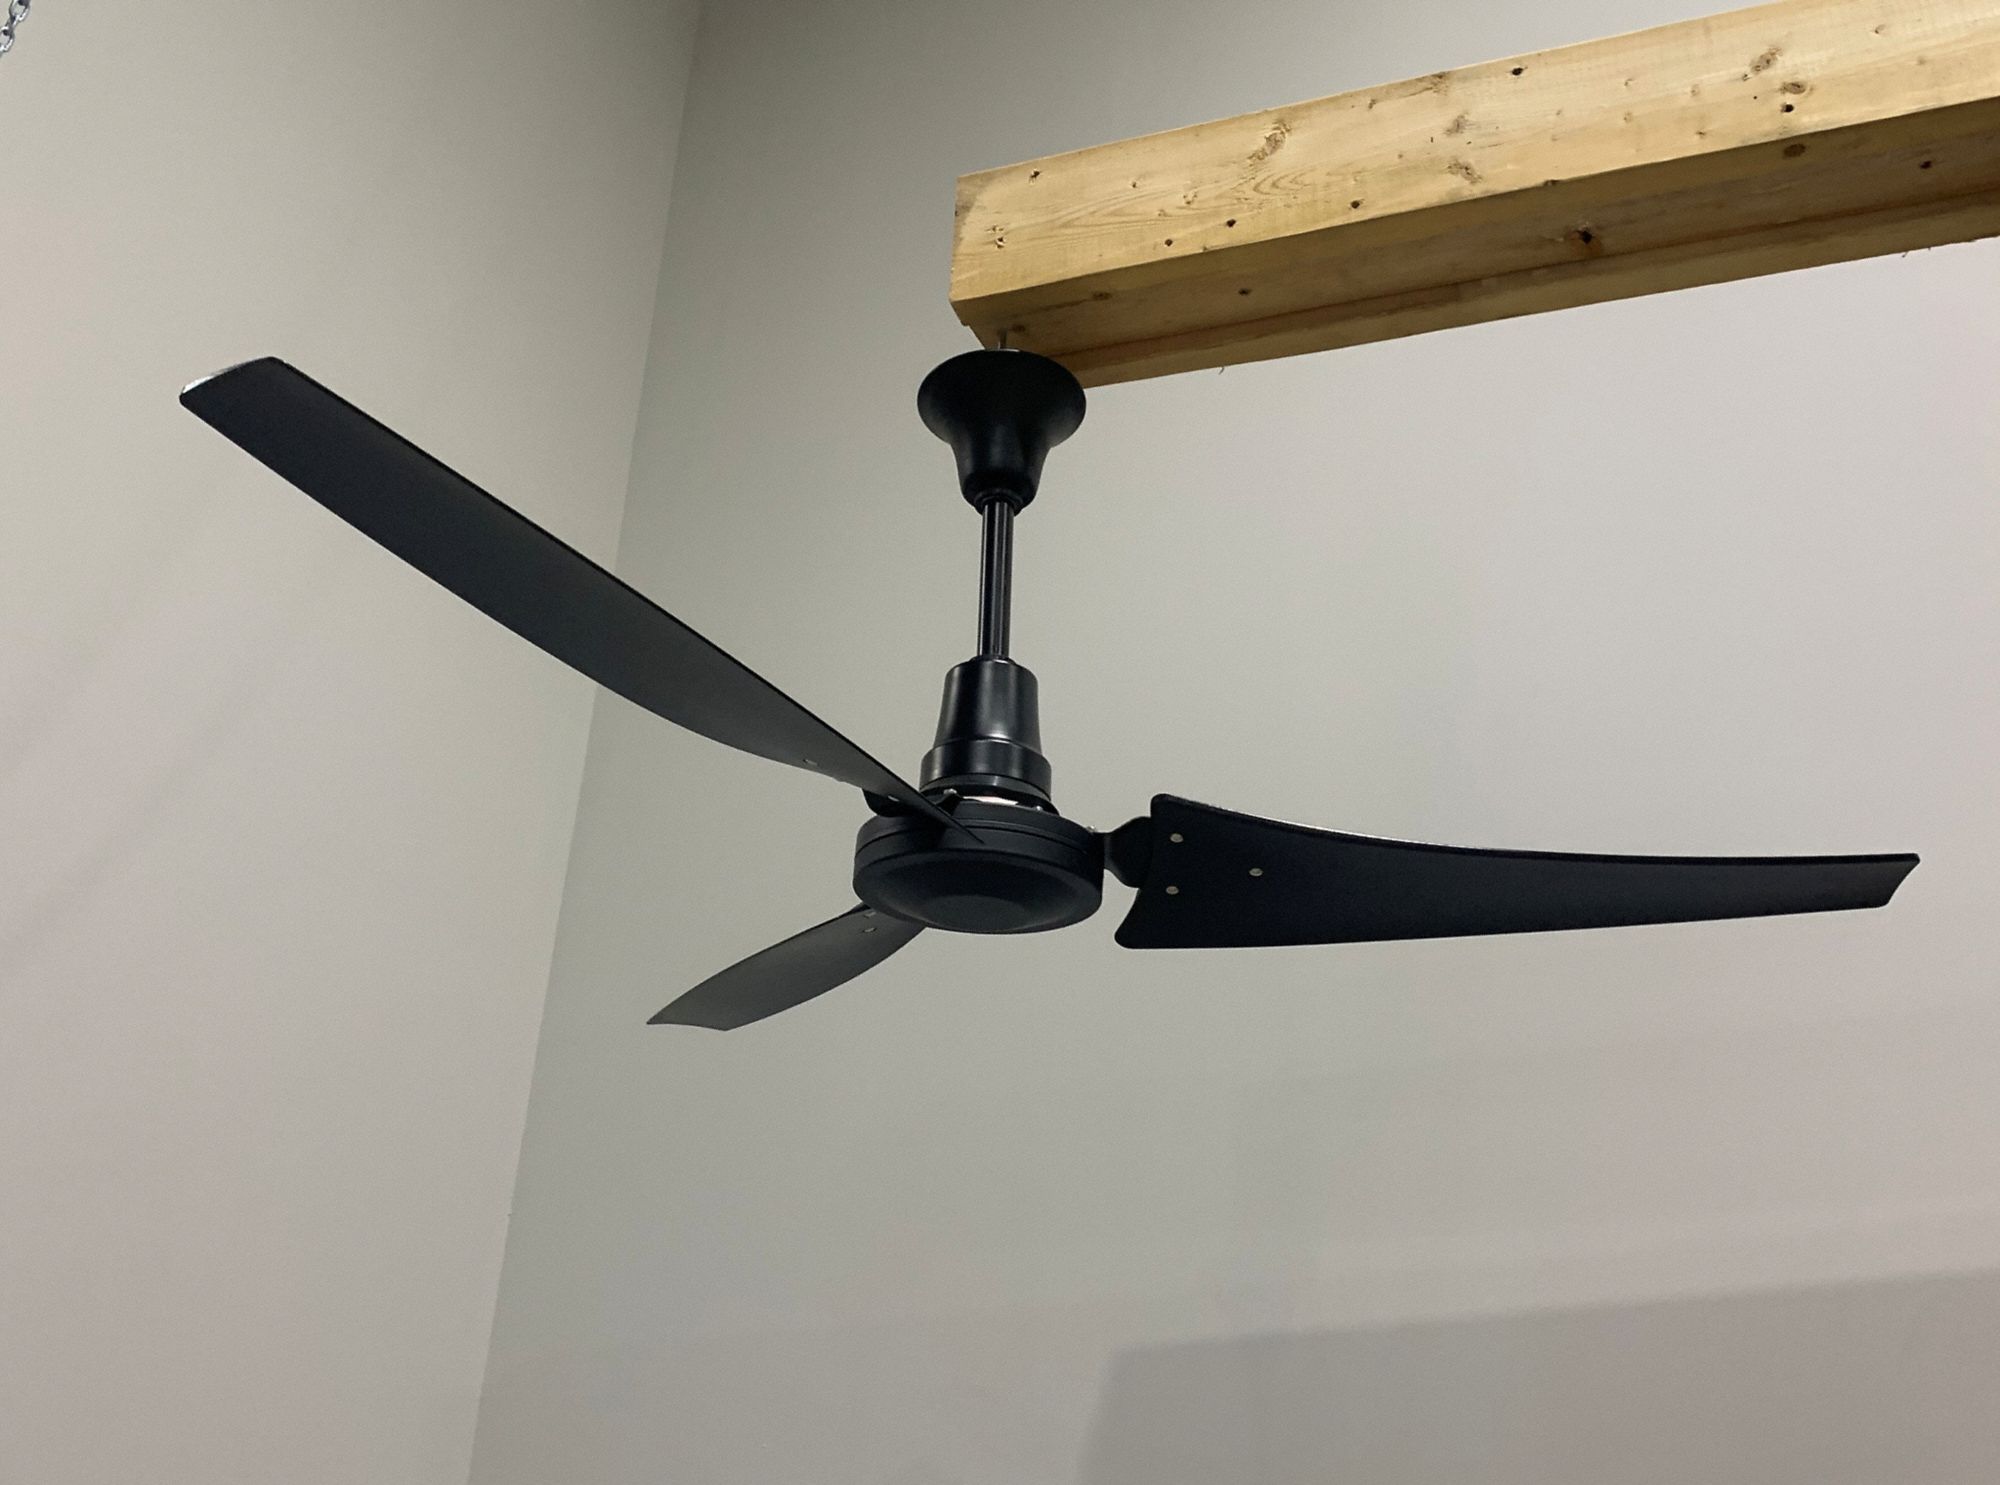 Light-Duty Indoor/Outdoor Industrial Ceiling Fan: 56 in Blade Dia, Variable Speeds, 5344 cfm